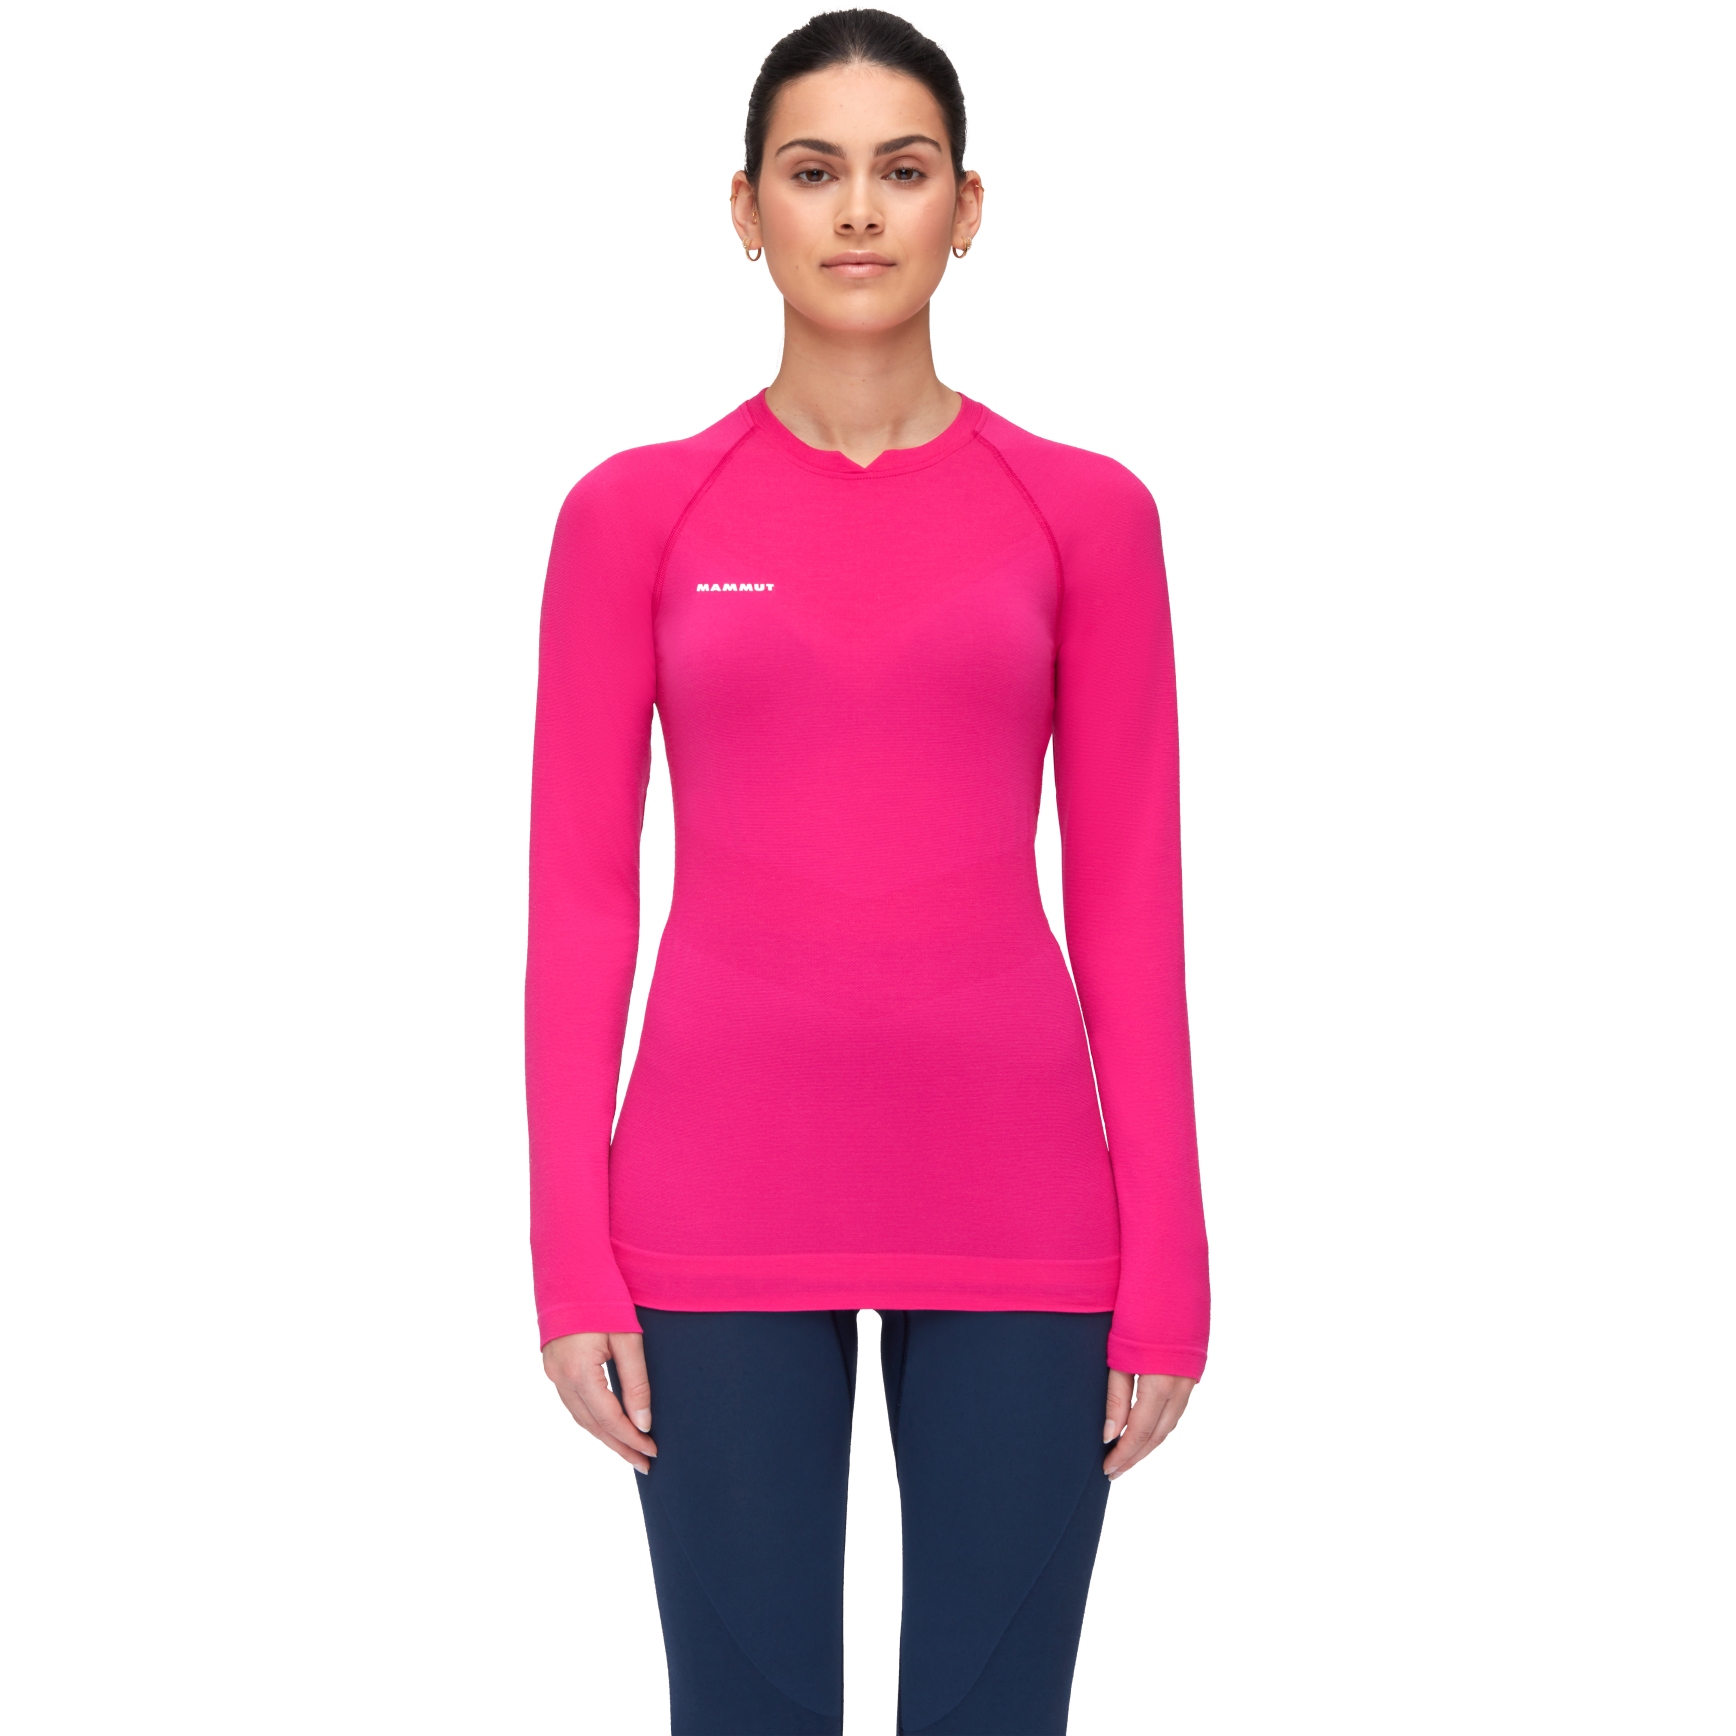 Produktbild von Mammut Trift Damen Langarmshirt - pink